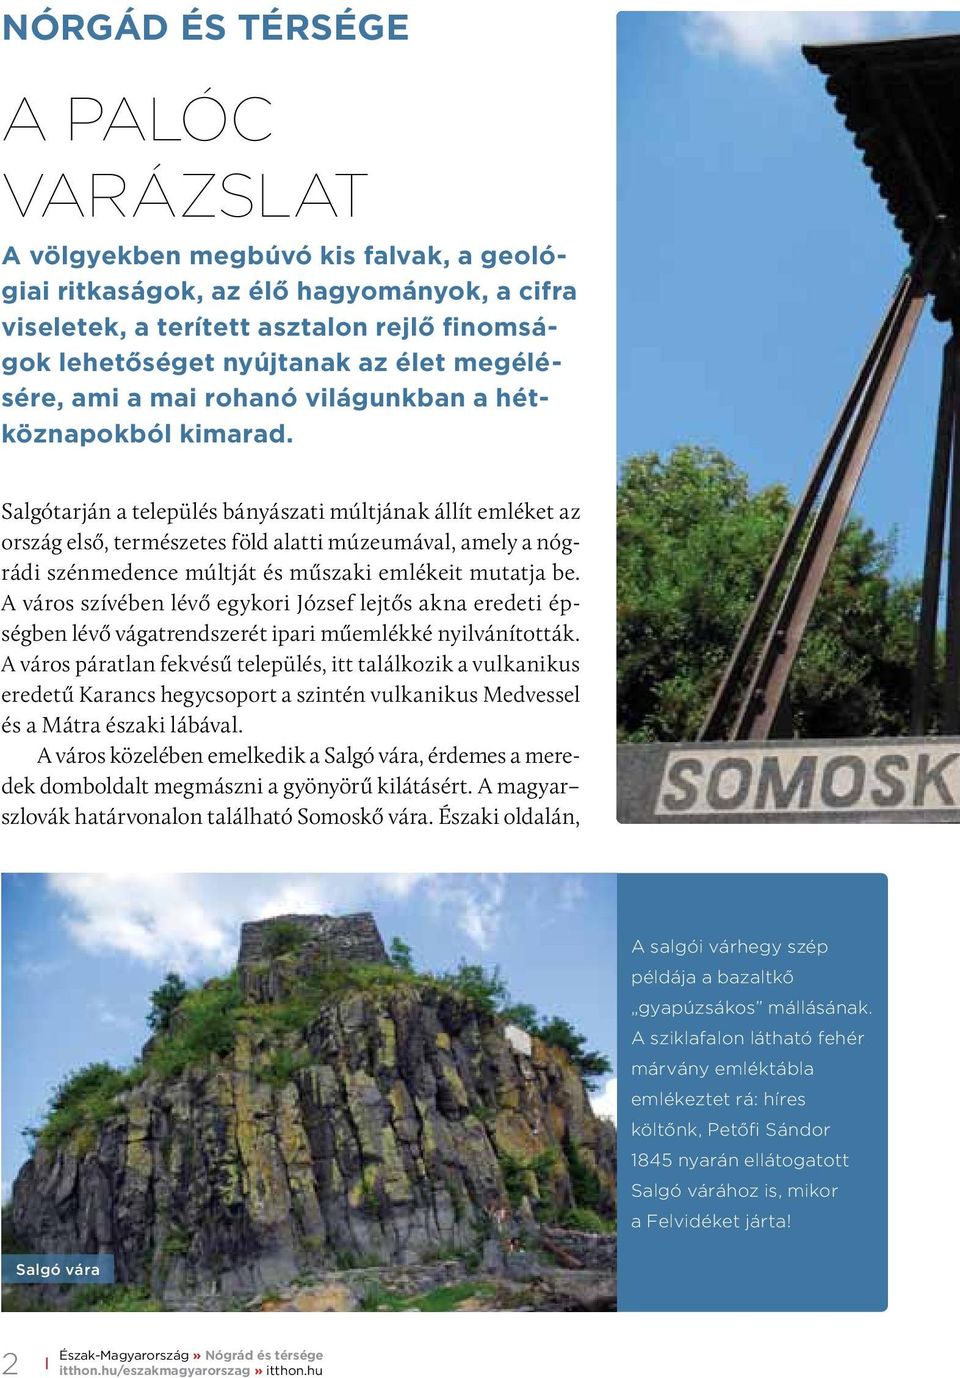 Salgótarján a település bányászati múltjának állít emléket az ország első, természetes föld alatti múzeumával, amely a nógrádi szénmedence múltját és műszaki emlékeit mutatja be.